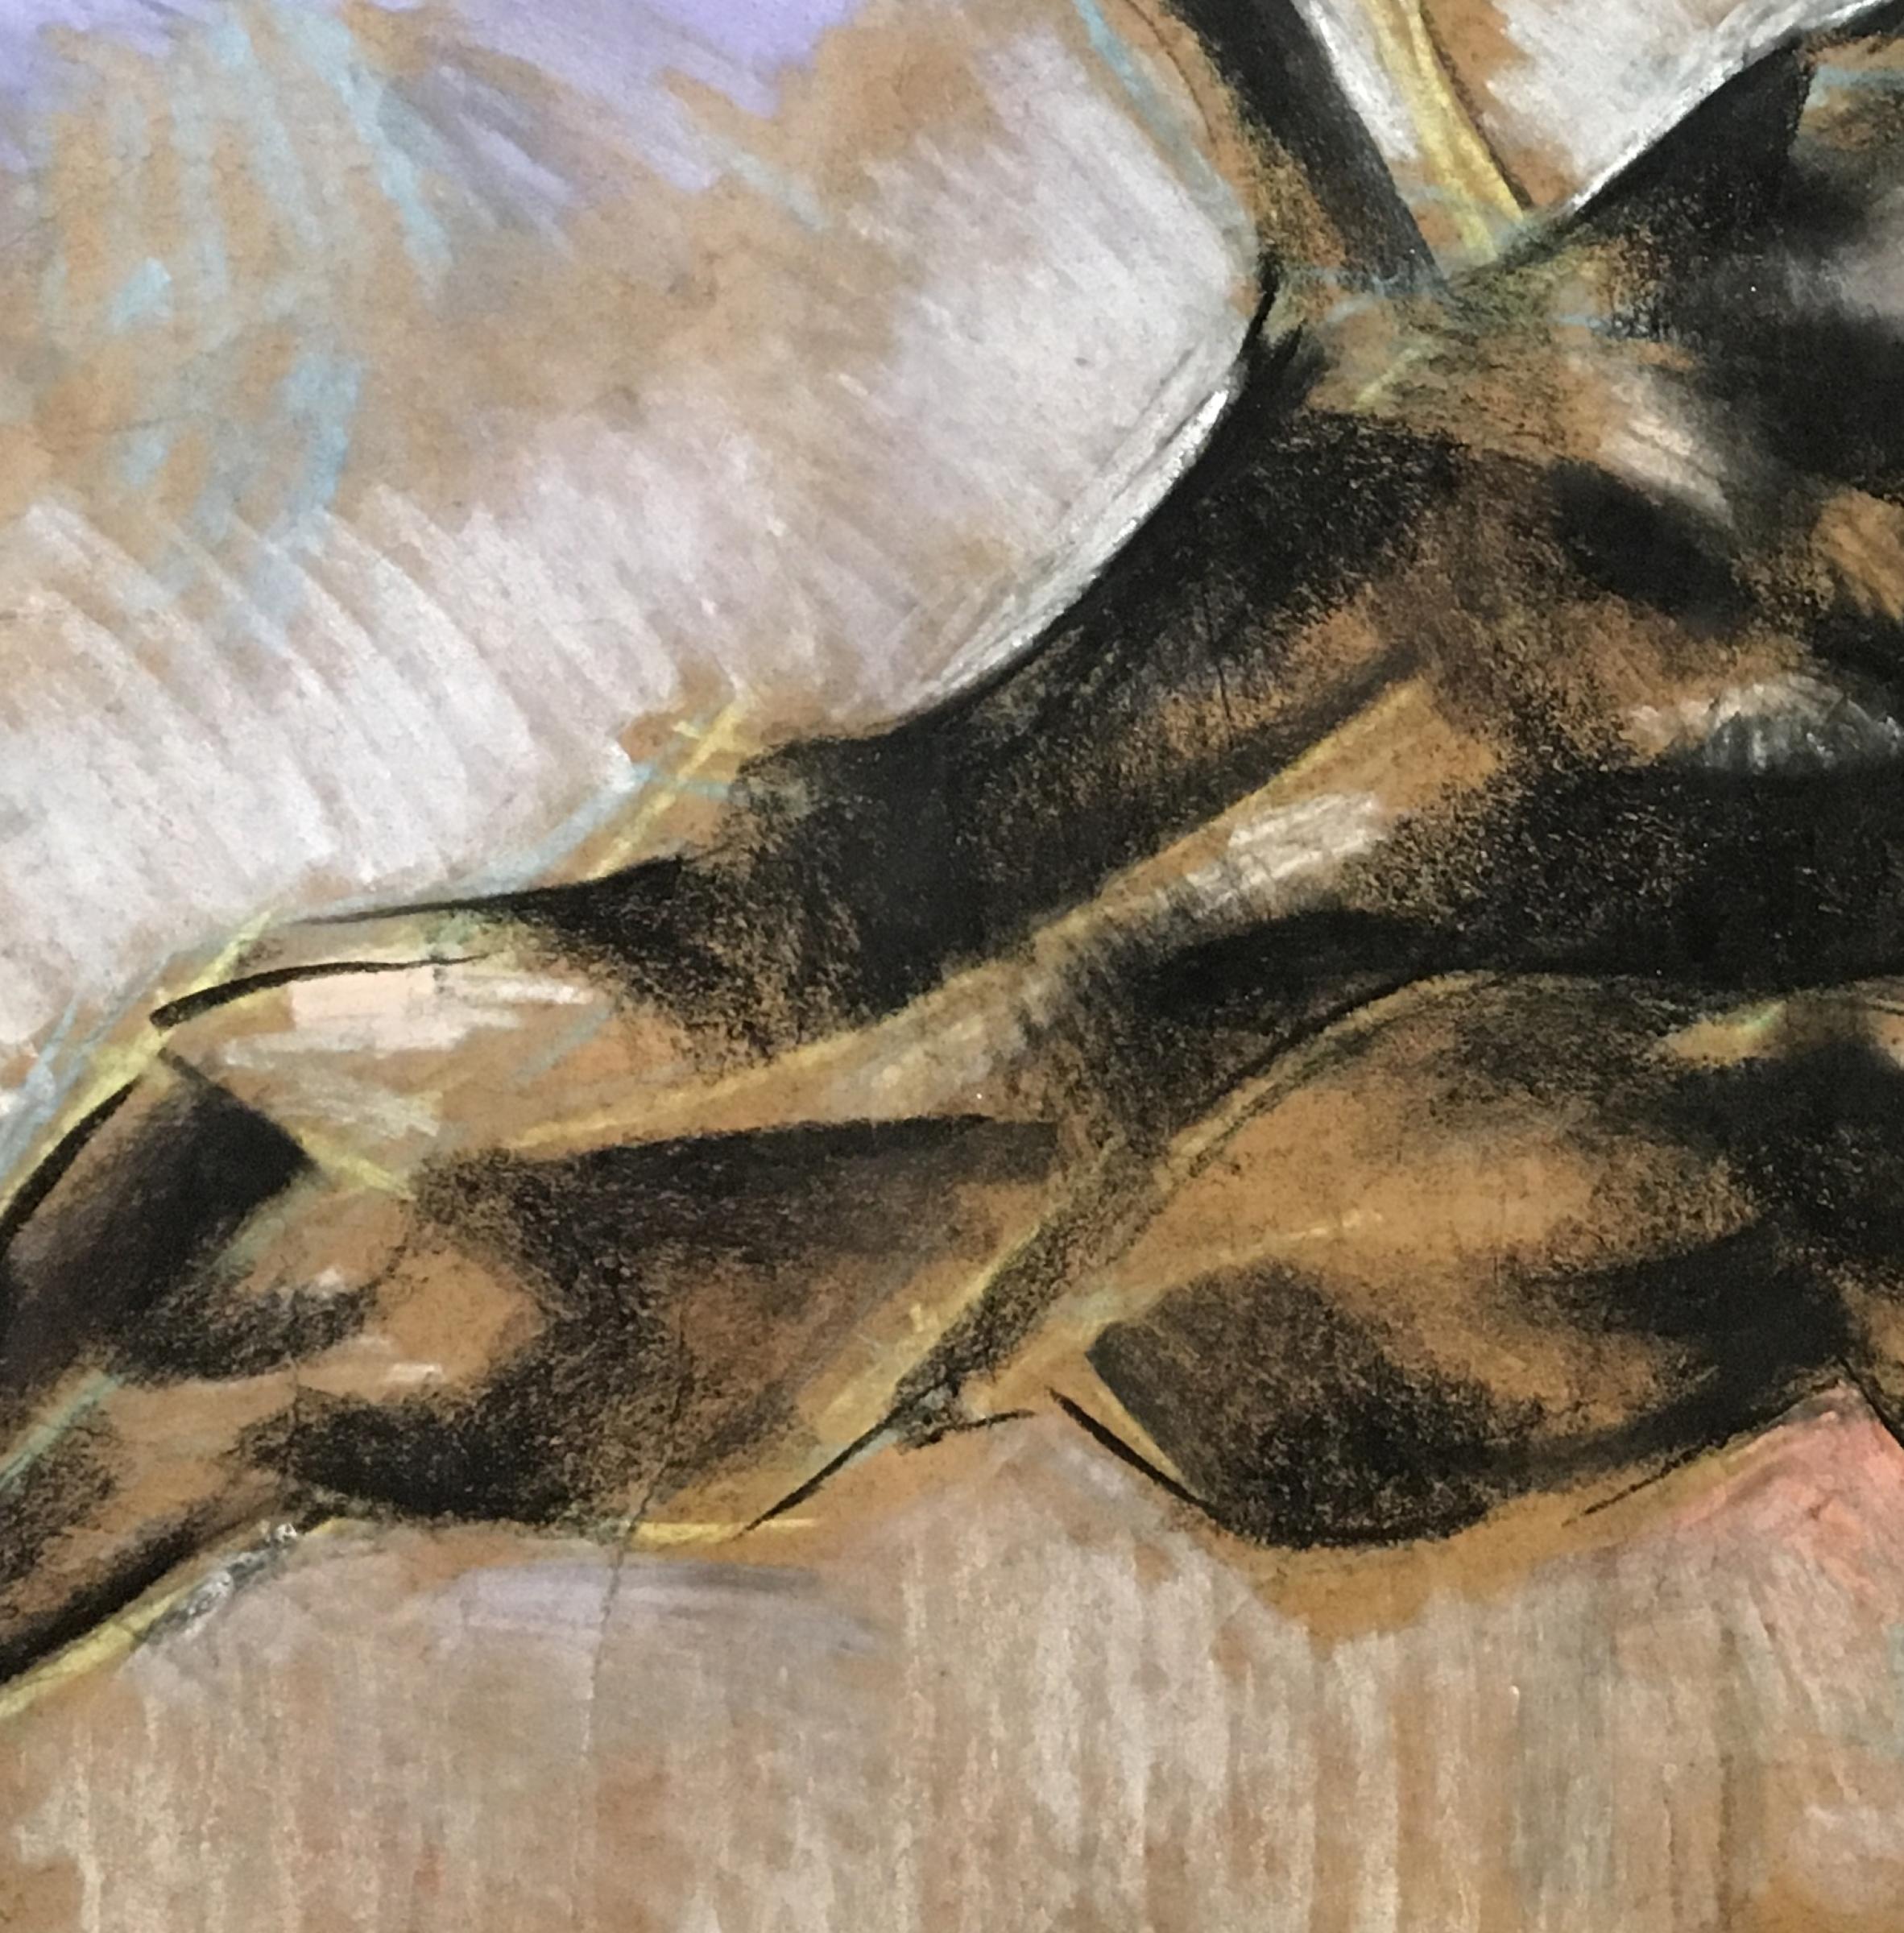 Pferd II, 2014
Farbstift auf Papier
28.74 H x 40,15 W Zoll.
73 H x 102 B cm

Die meisten Zeichnungen von Dinu Rădulescu zeigen das Pferd als Abbild von Adel und Freiheit. 

Das Pferd ist durch feste, geschwungene Linien überraschend stilisiert und